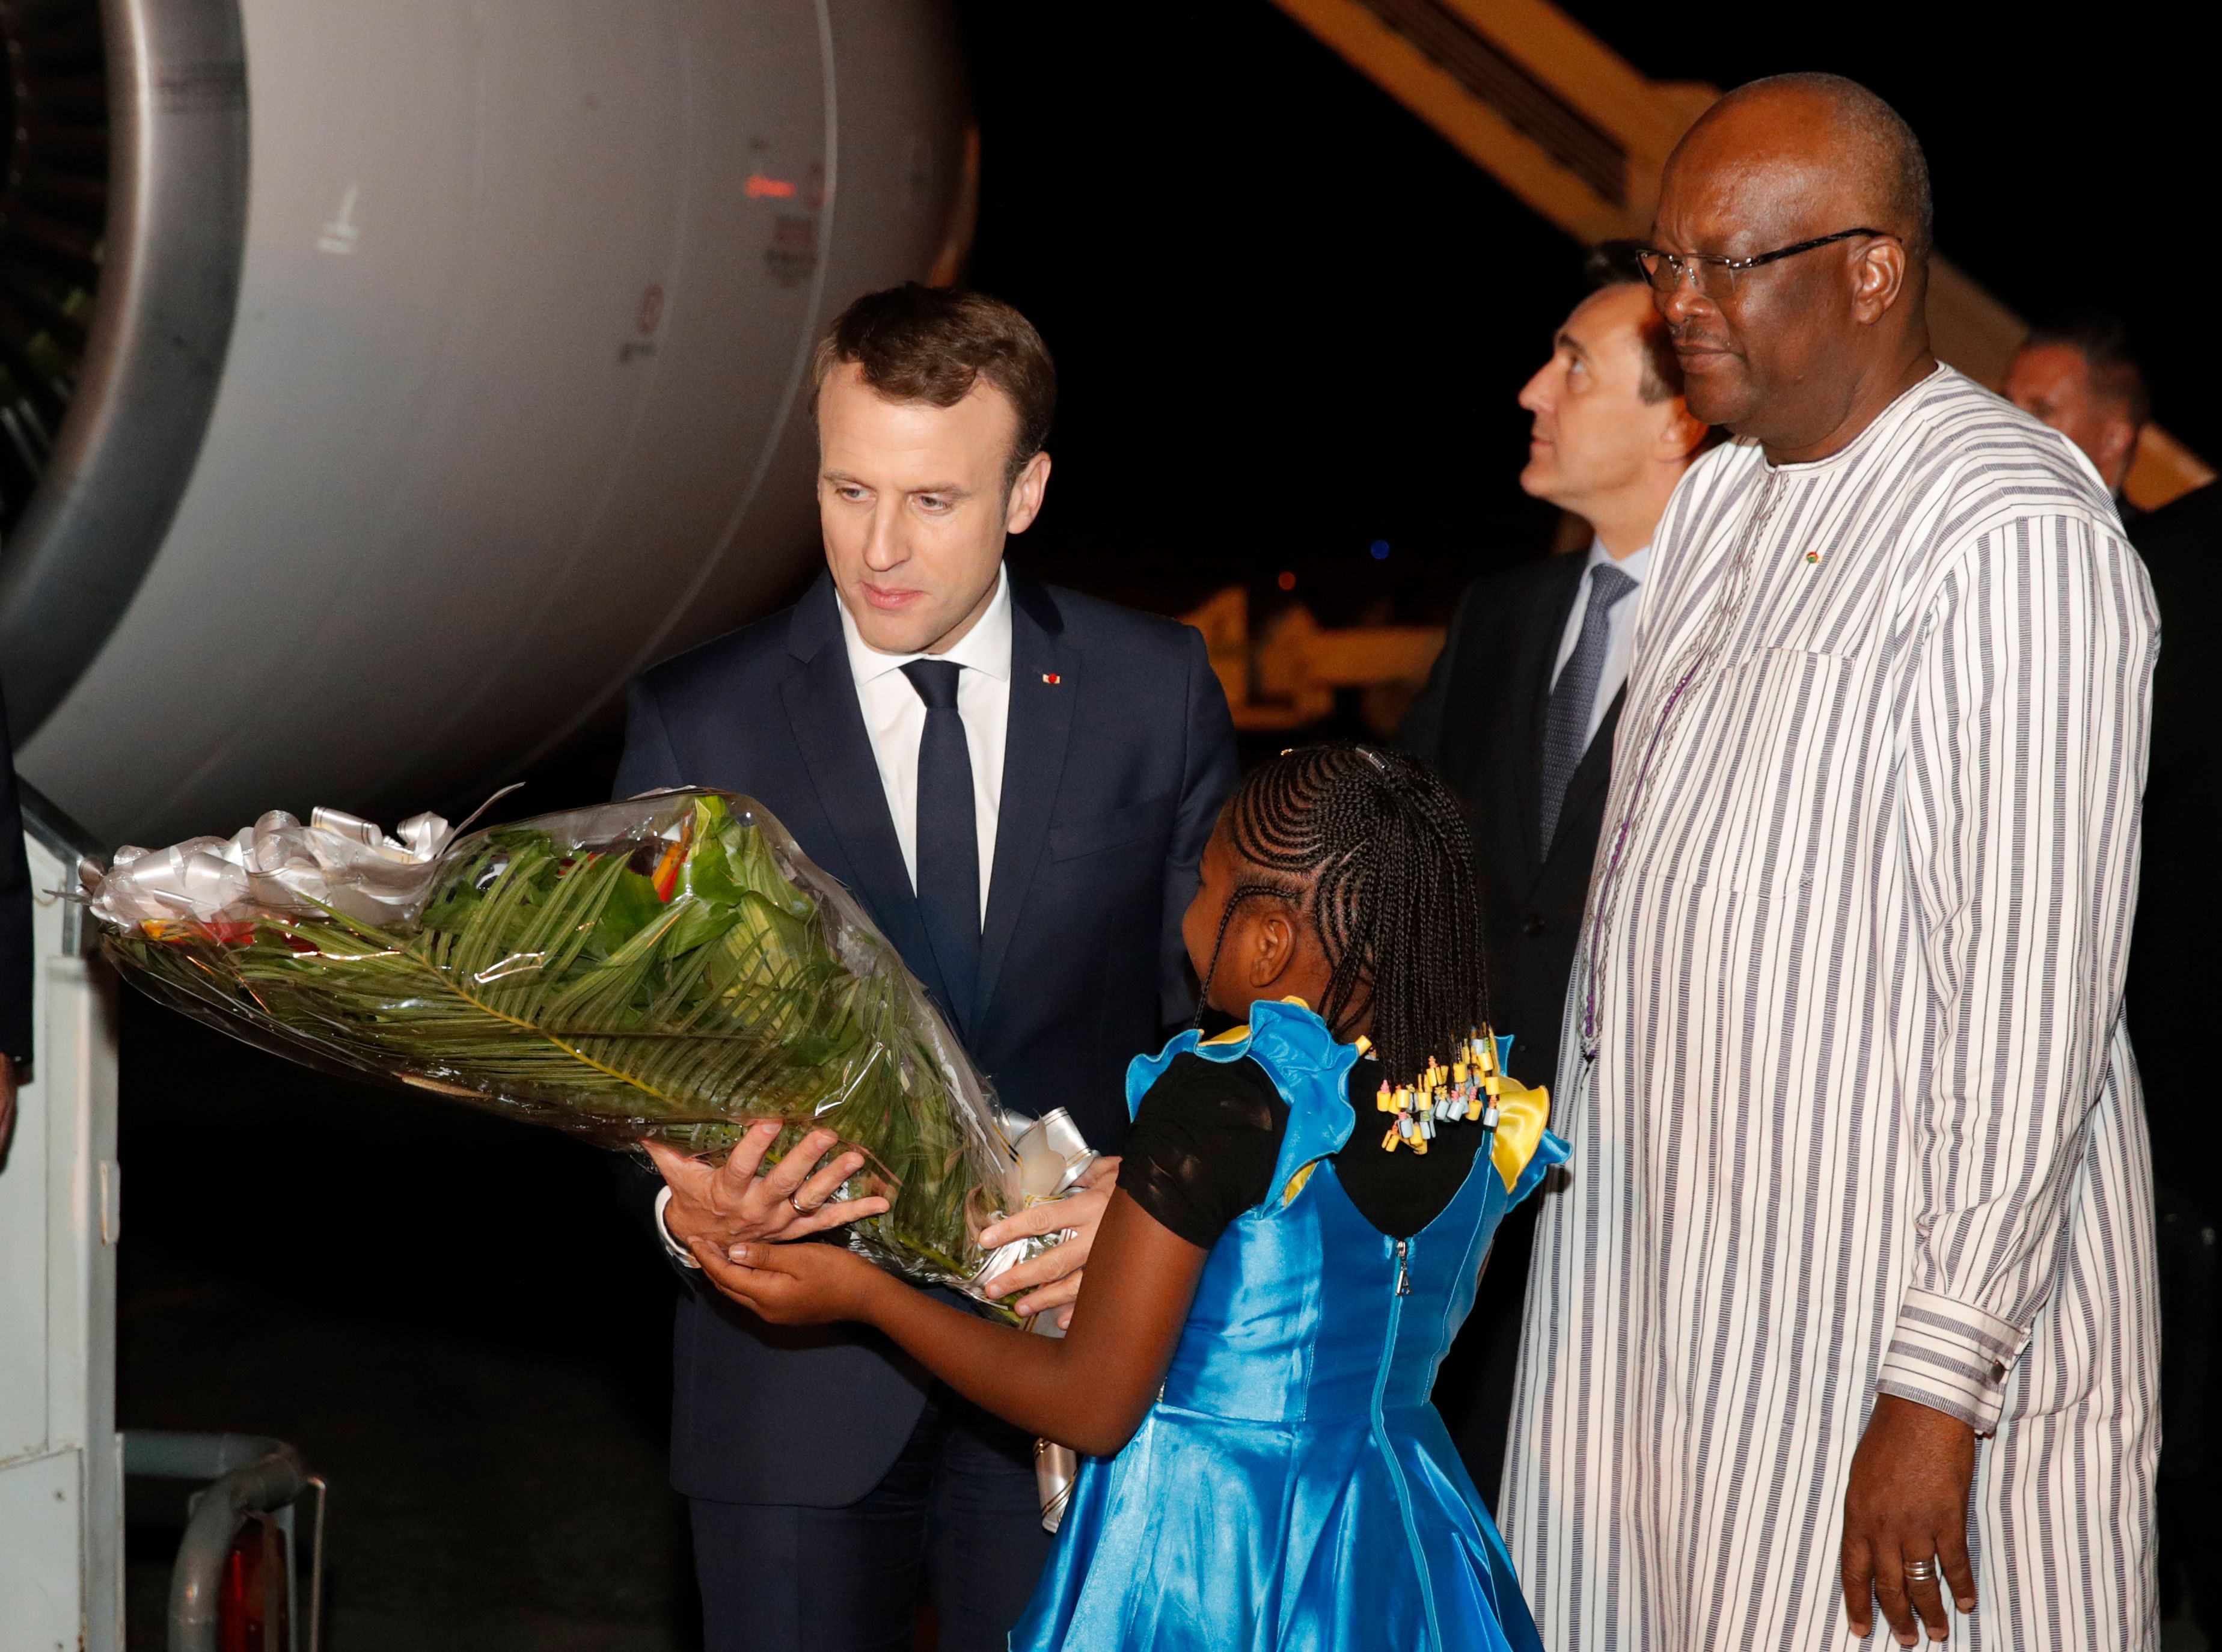 وصول الرئيس الفرنسى ماكرون لبوركينا فاسو